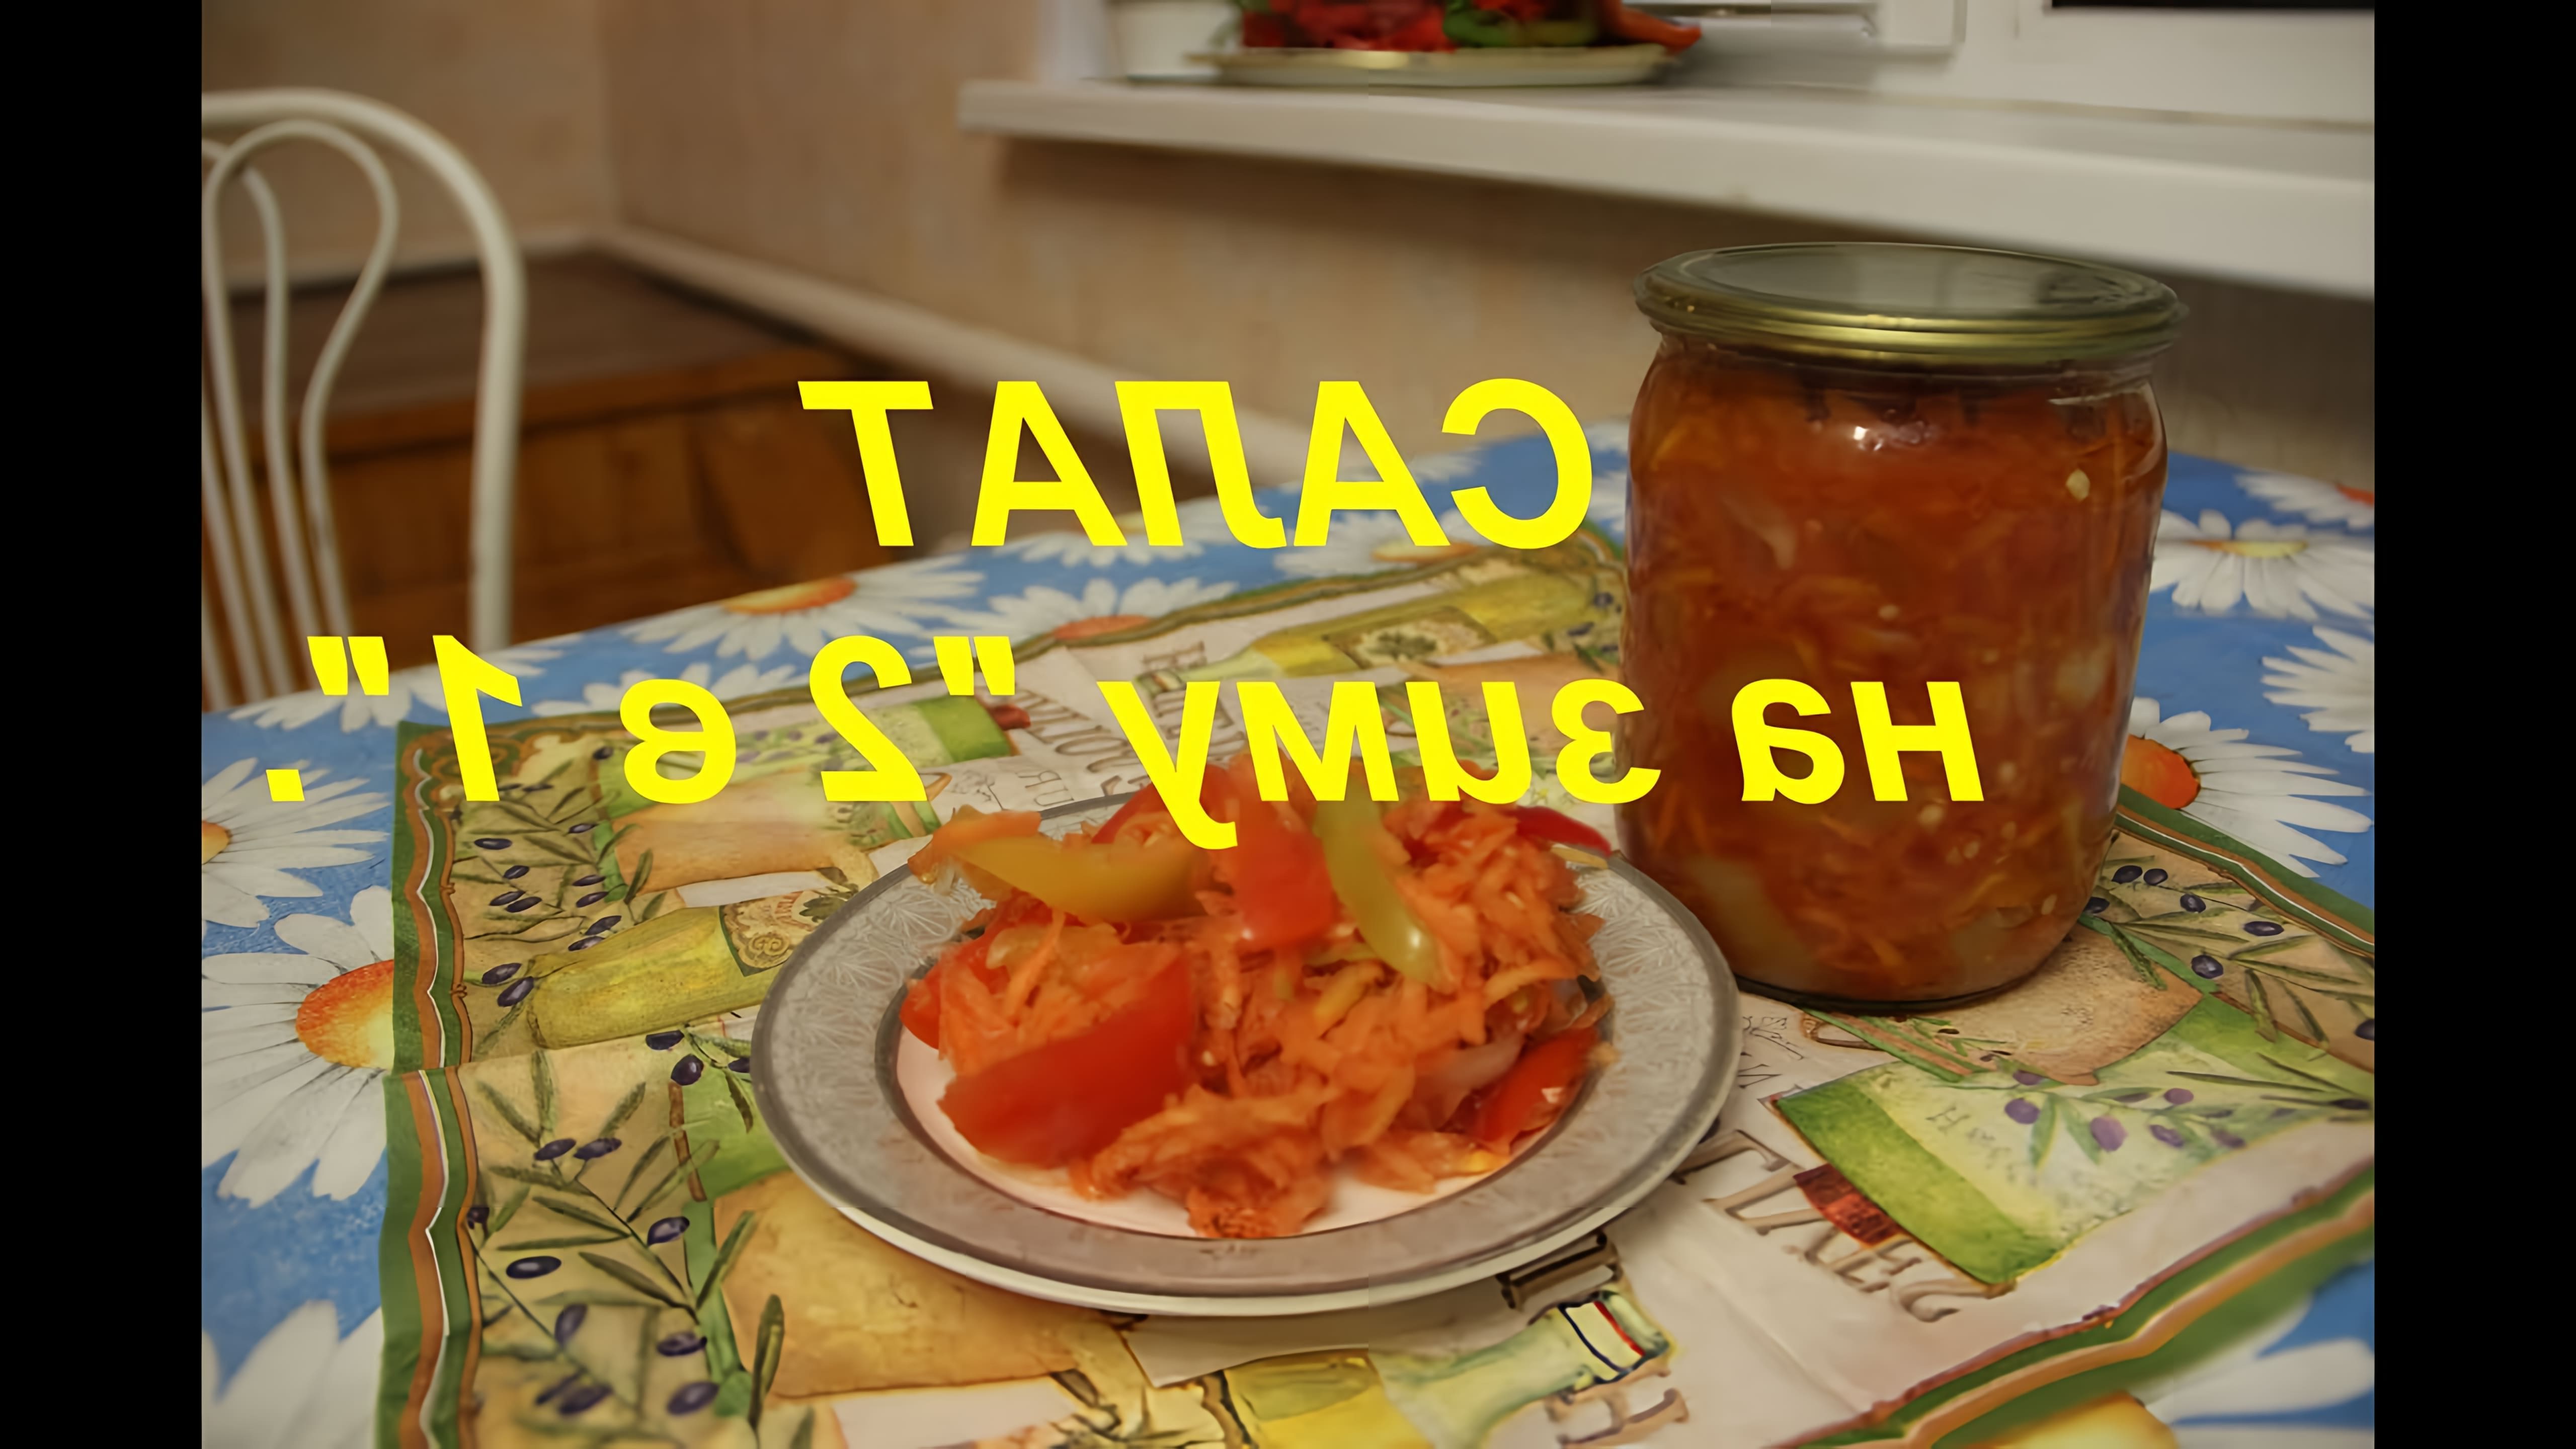 В этом видео Юлия предлагает рецепт салата "2 в 1", который можно использовать как салат или как заправку для других блюд